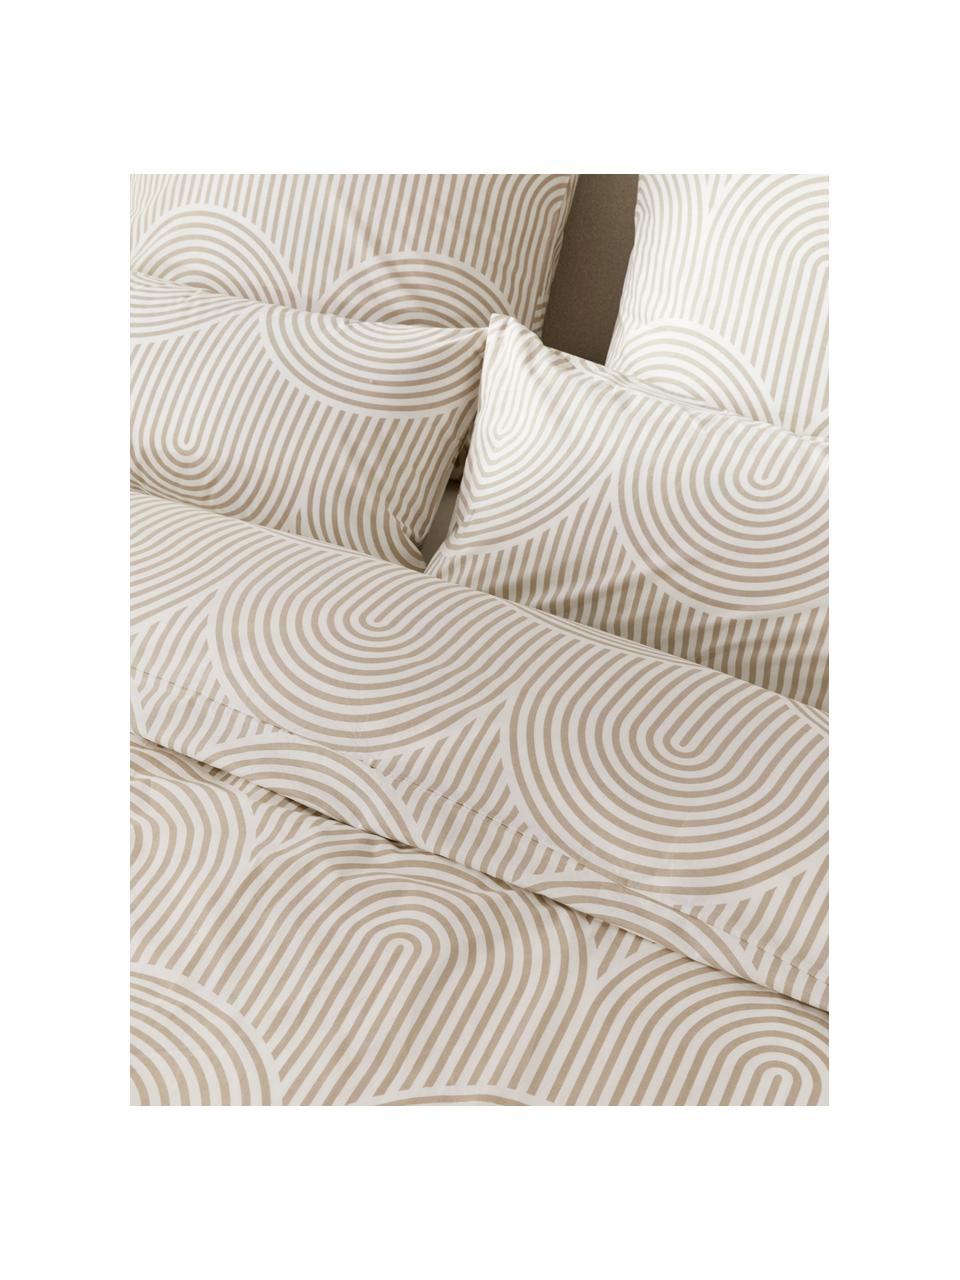 Pościel z bawełny Arcs, Beżowy, 200 x 200 cm + 2 poduszki 80 x 80 cm